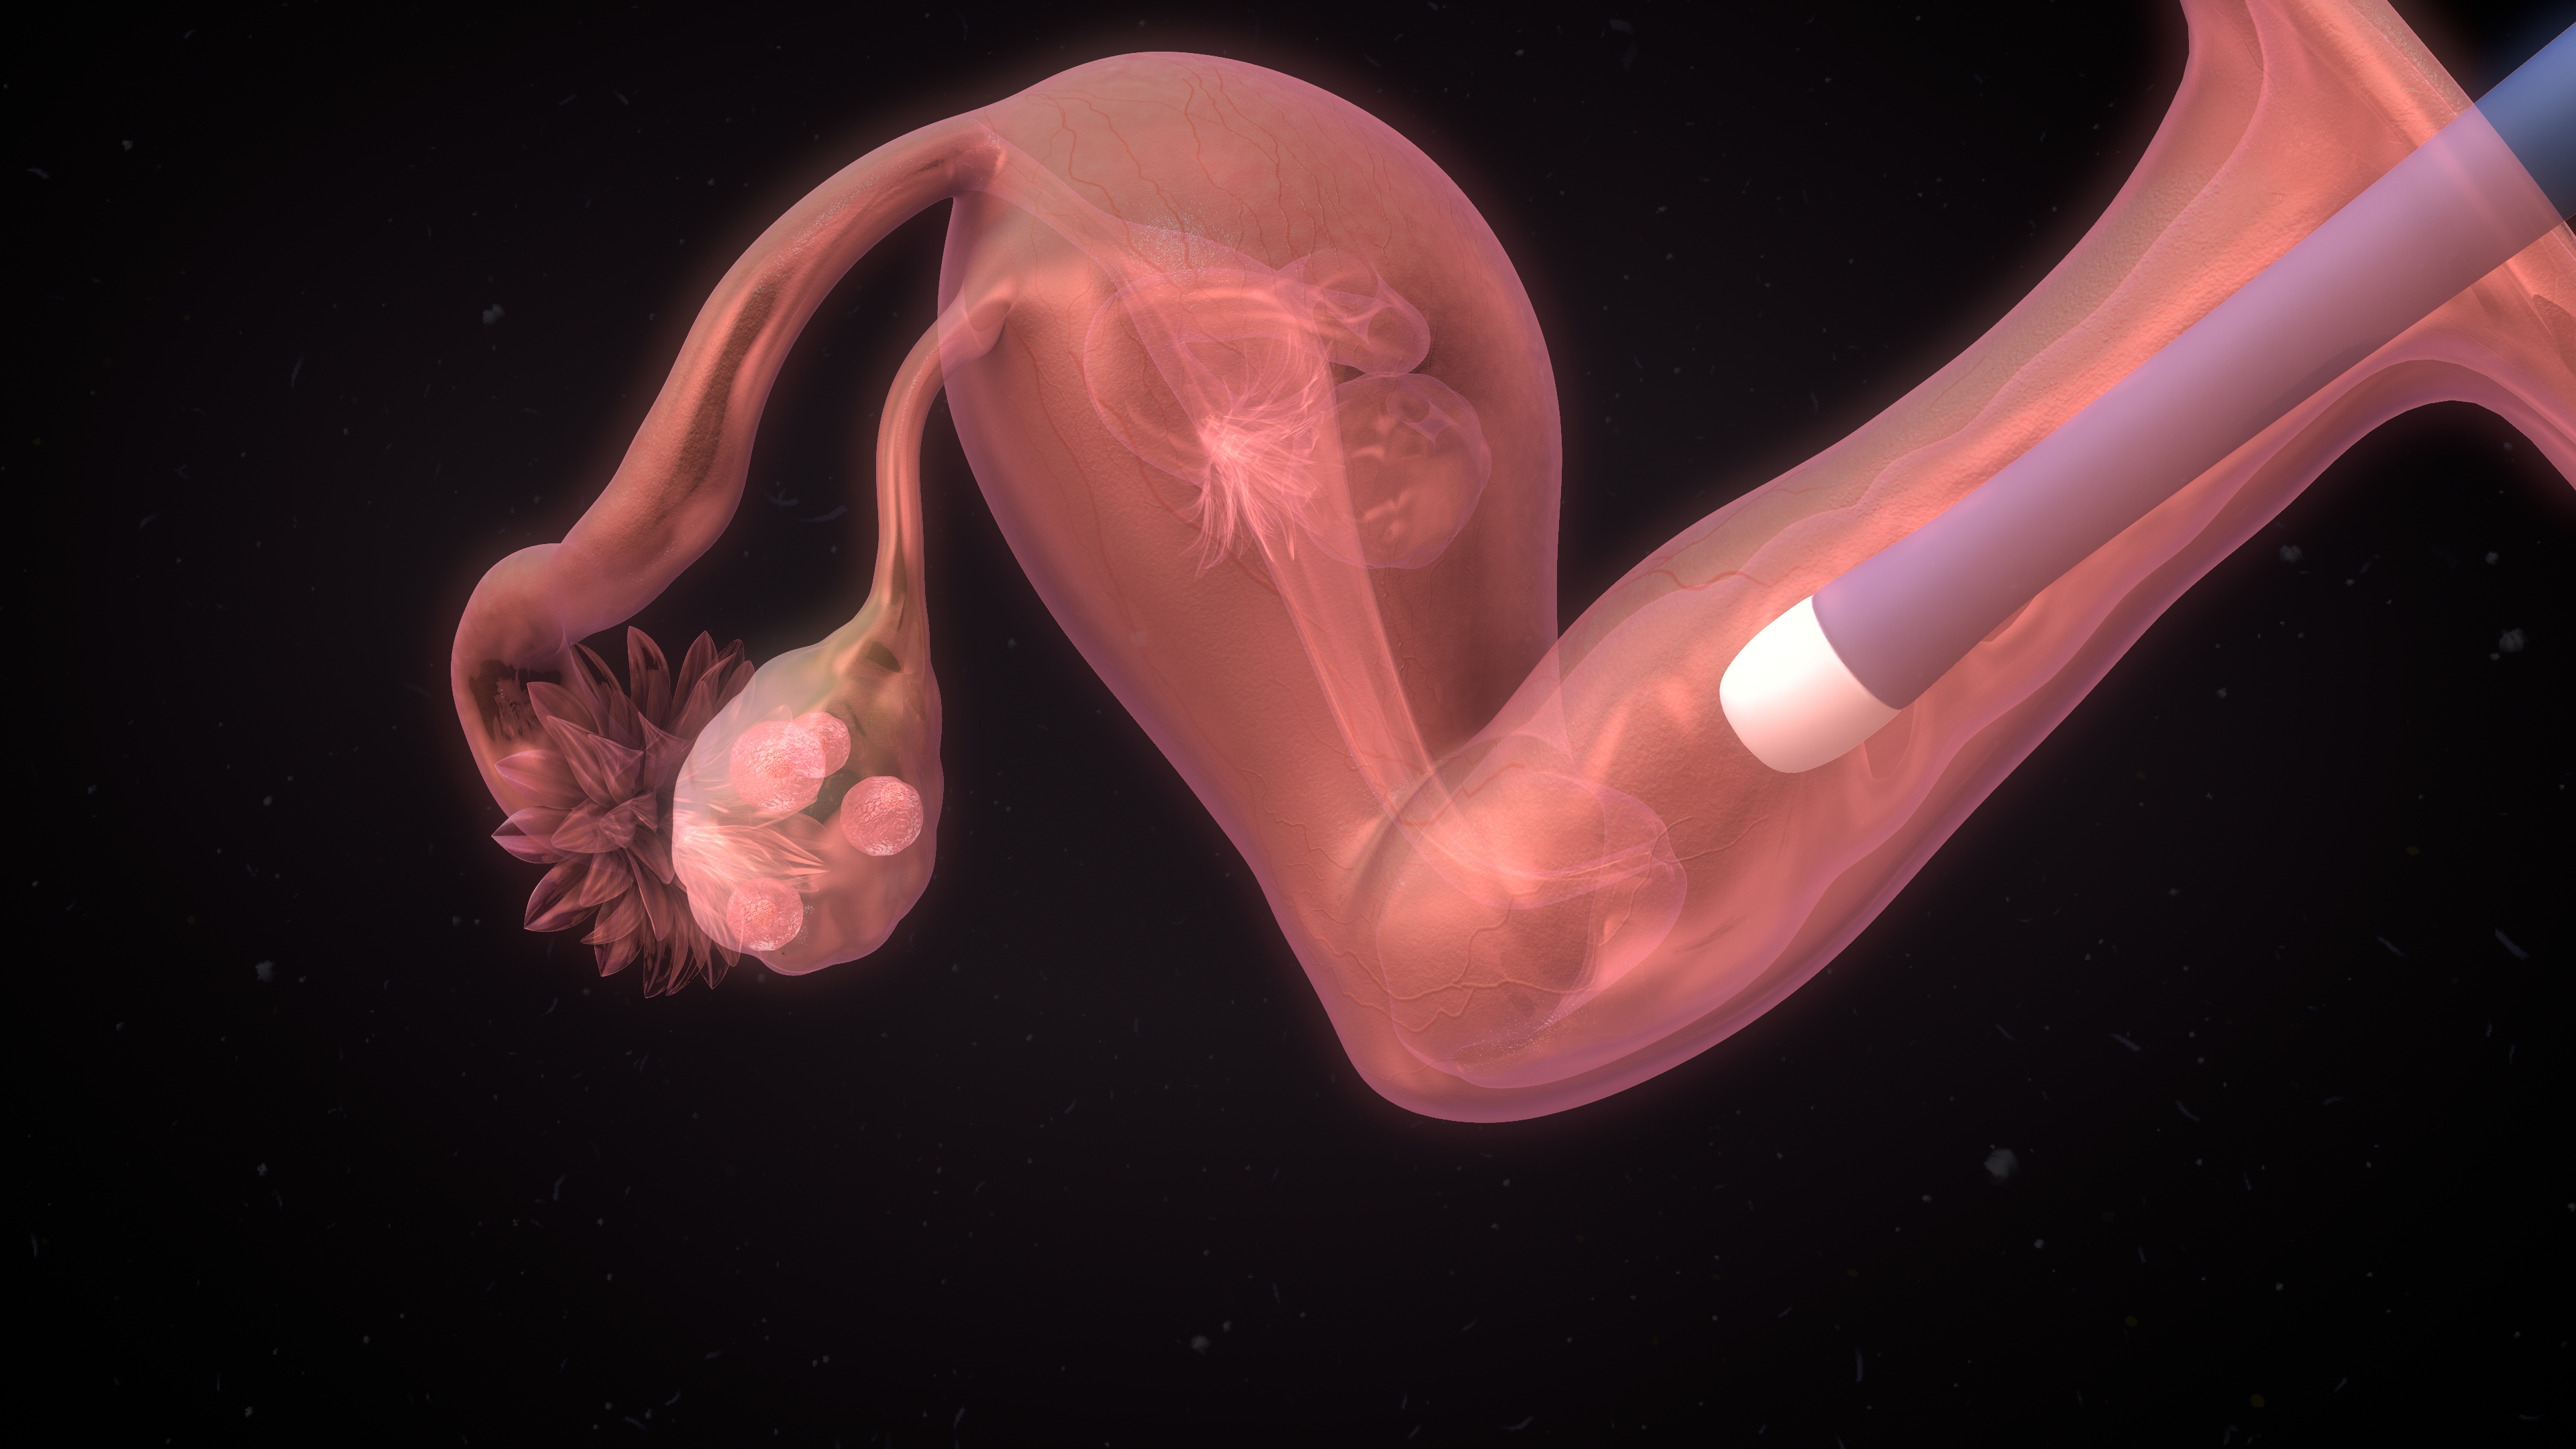 попадает ли сперма в матку при беременности фото 83